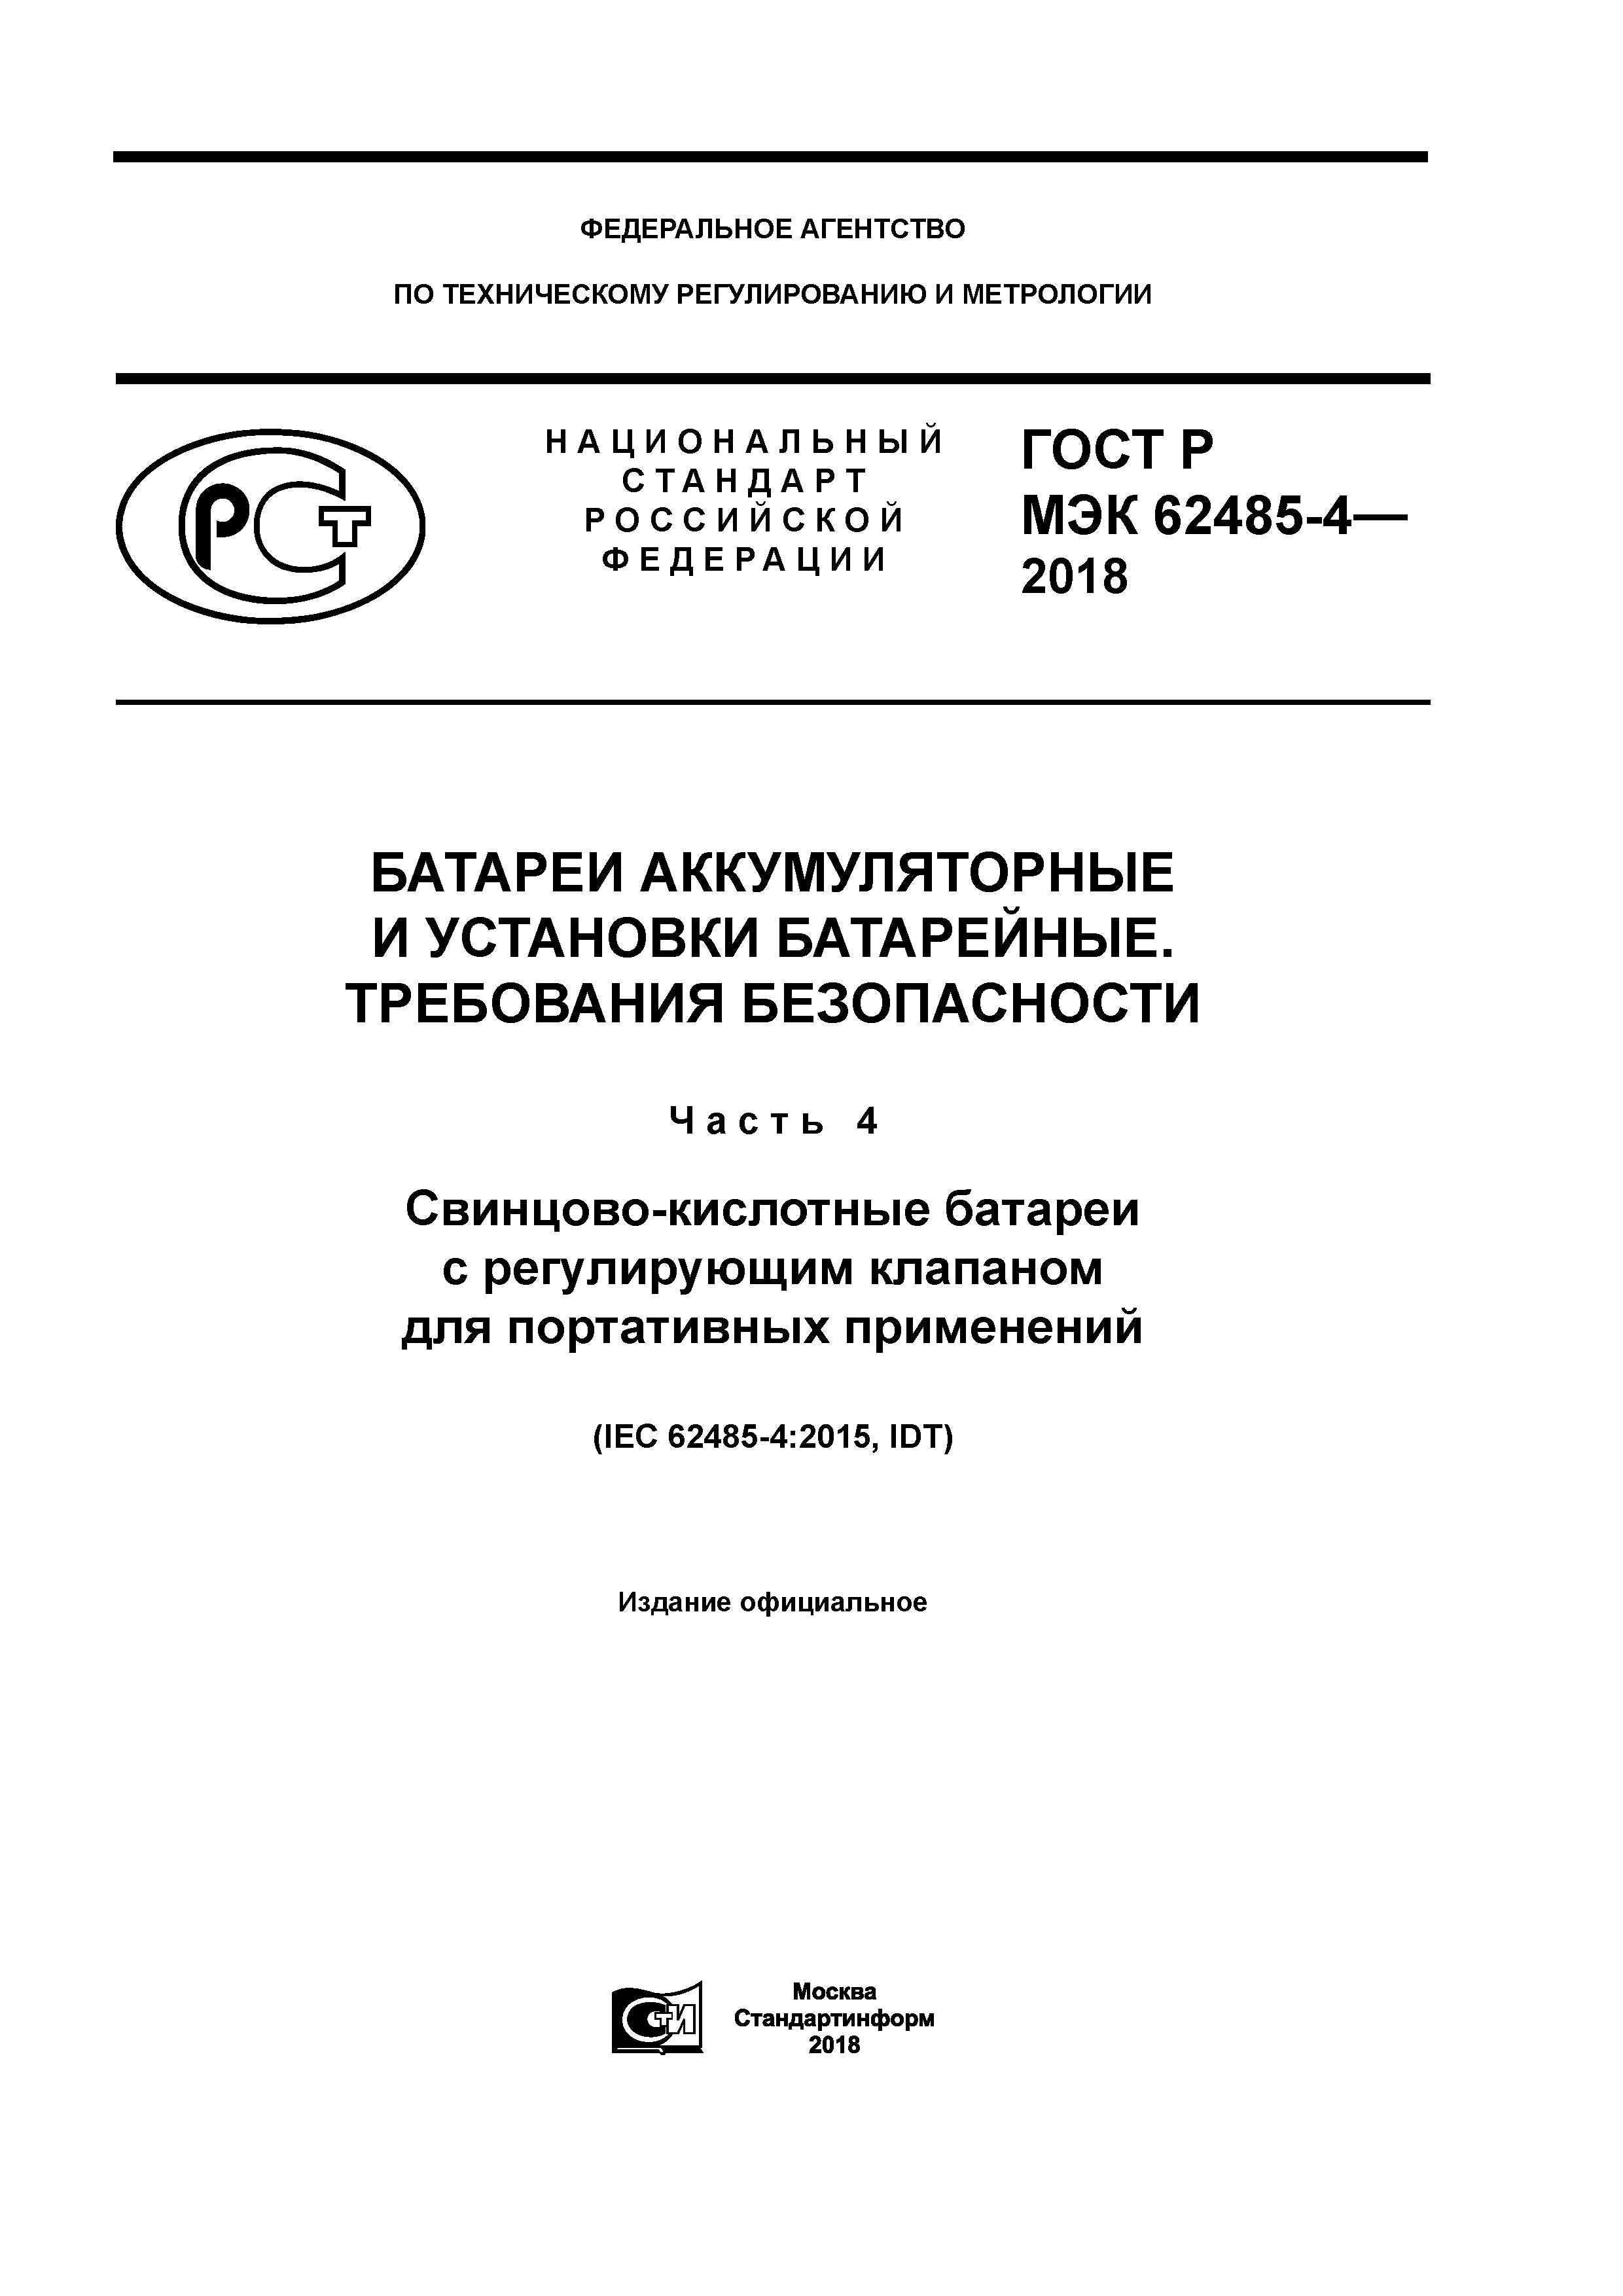 ГОСТ Р МЭК 62485-4-2018